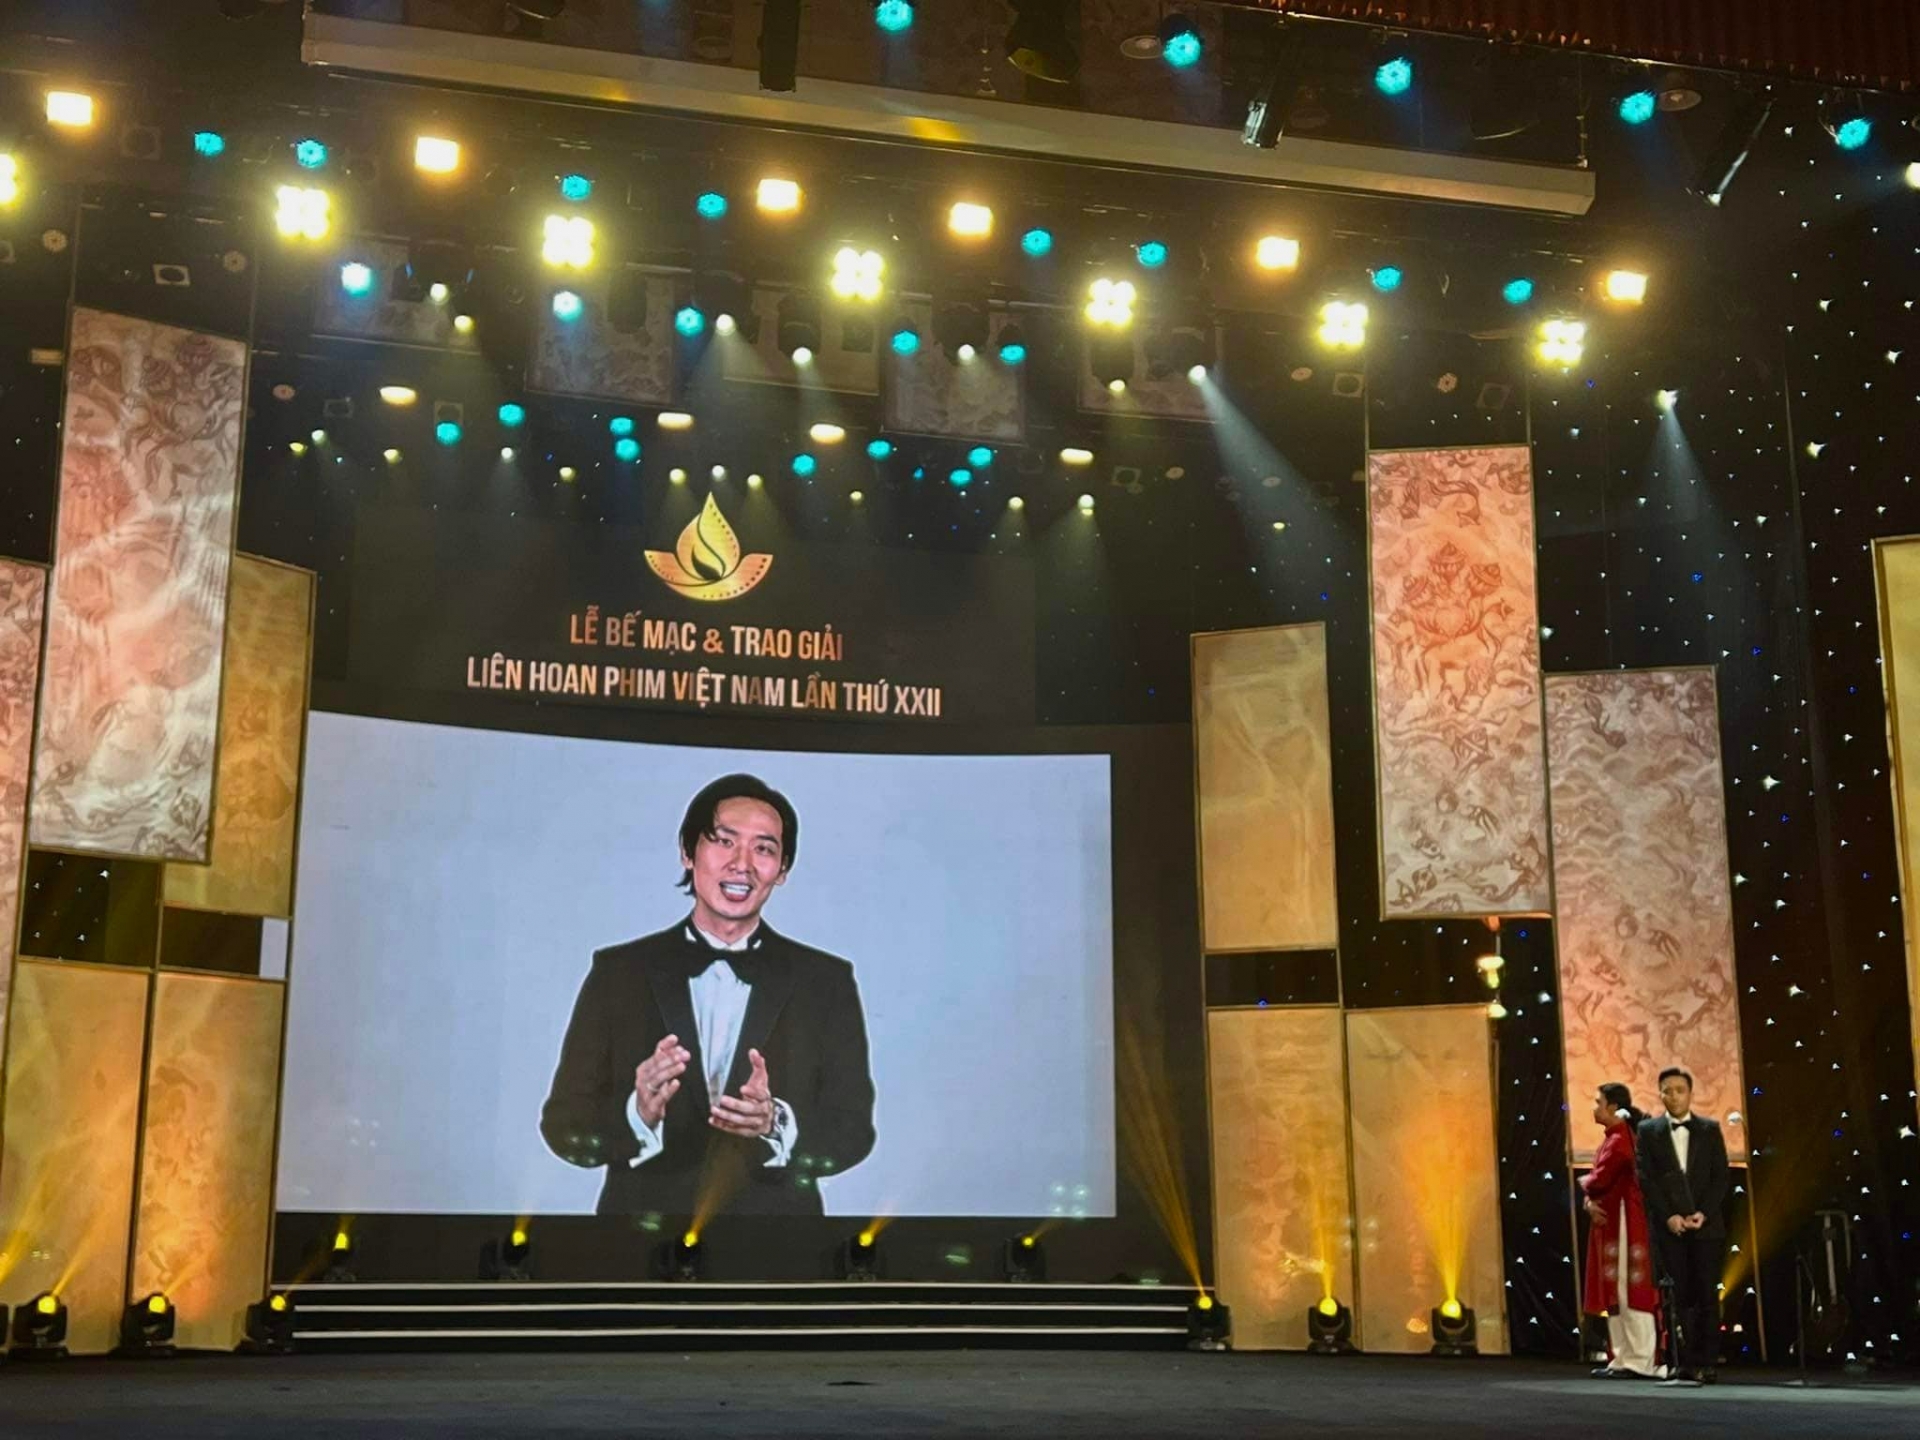 Tuấn Trần đoạt giải nam chính xuất sắc nhất Liên hoan phim Việt Nam 2021 - Ảnh 1